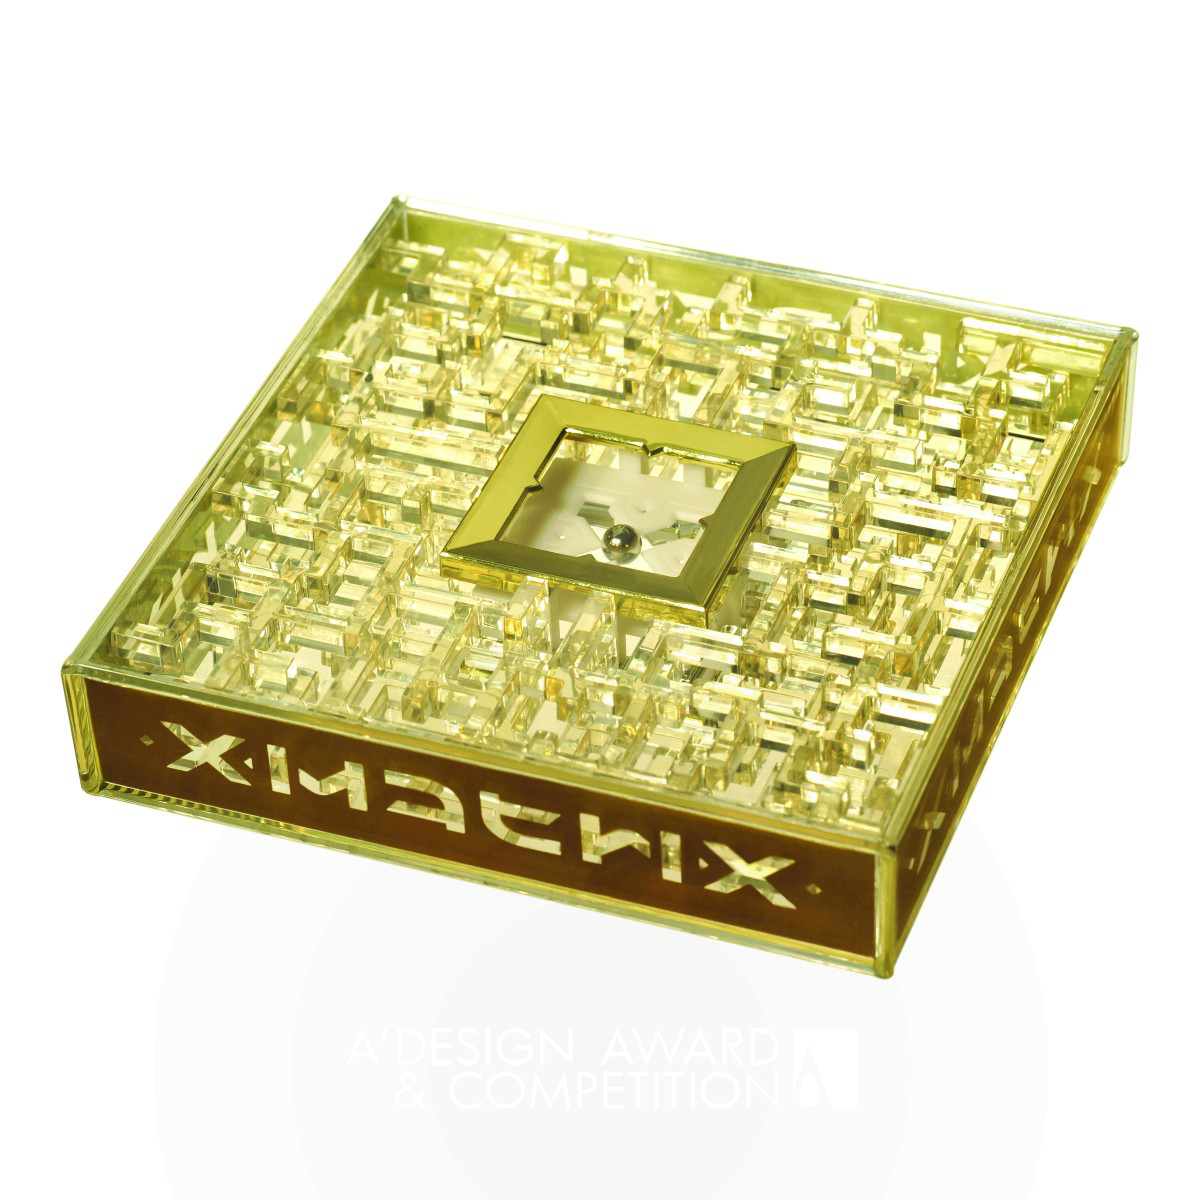 Xmatrix Quadrus Labyrinth Puzzle by Jeremy Goode